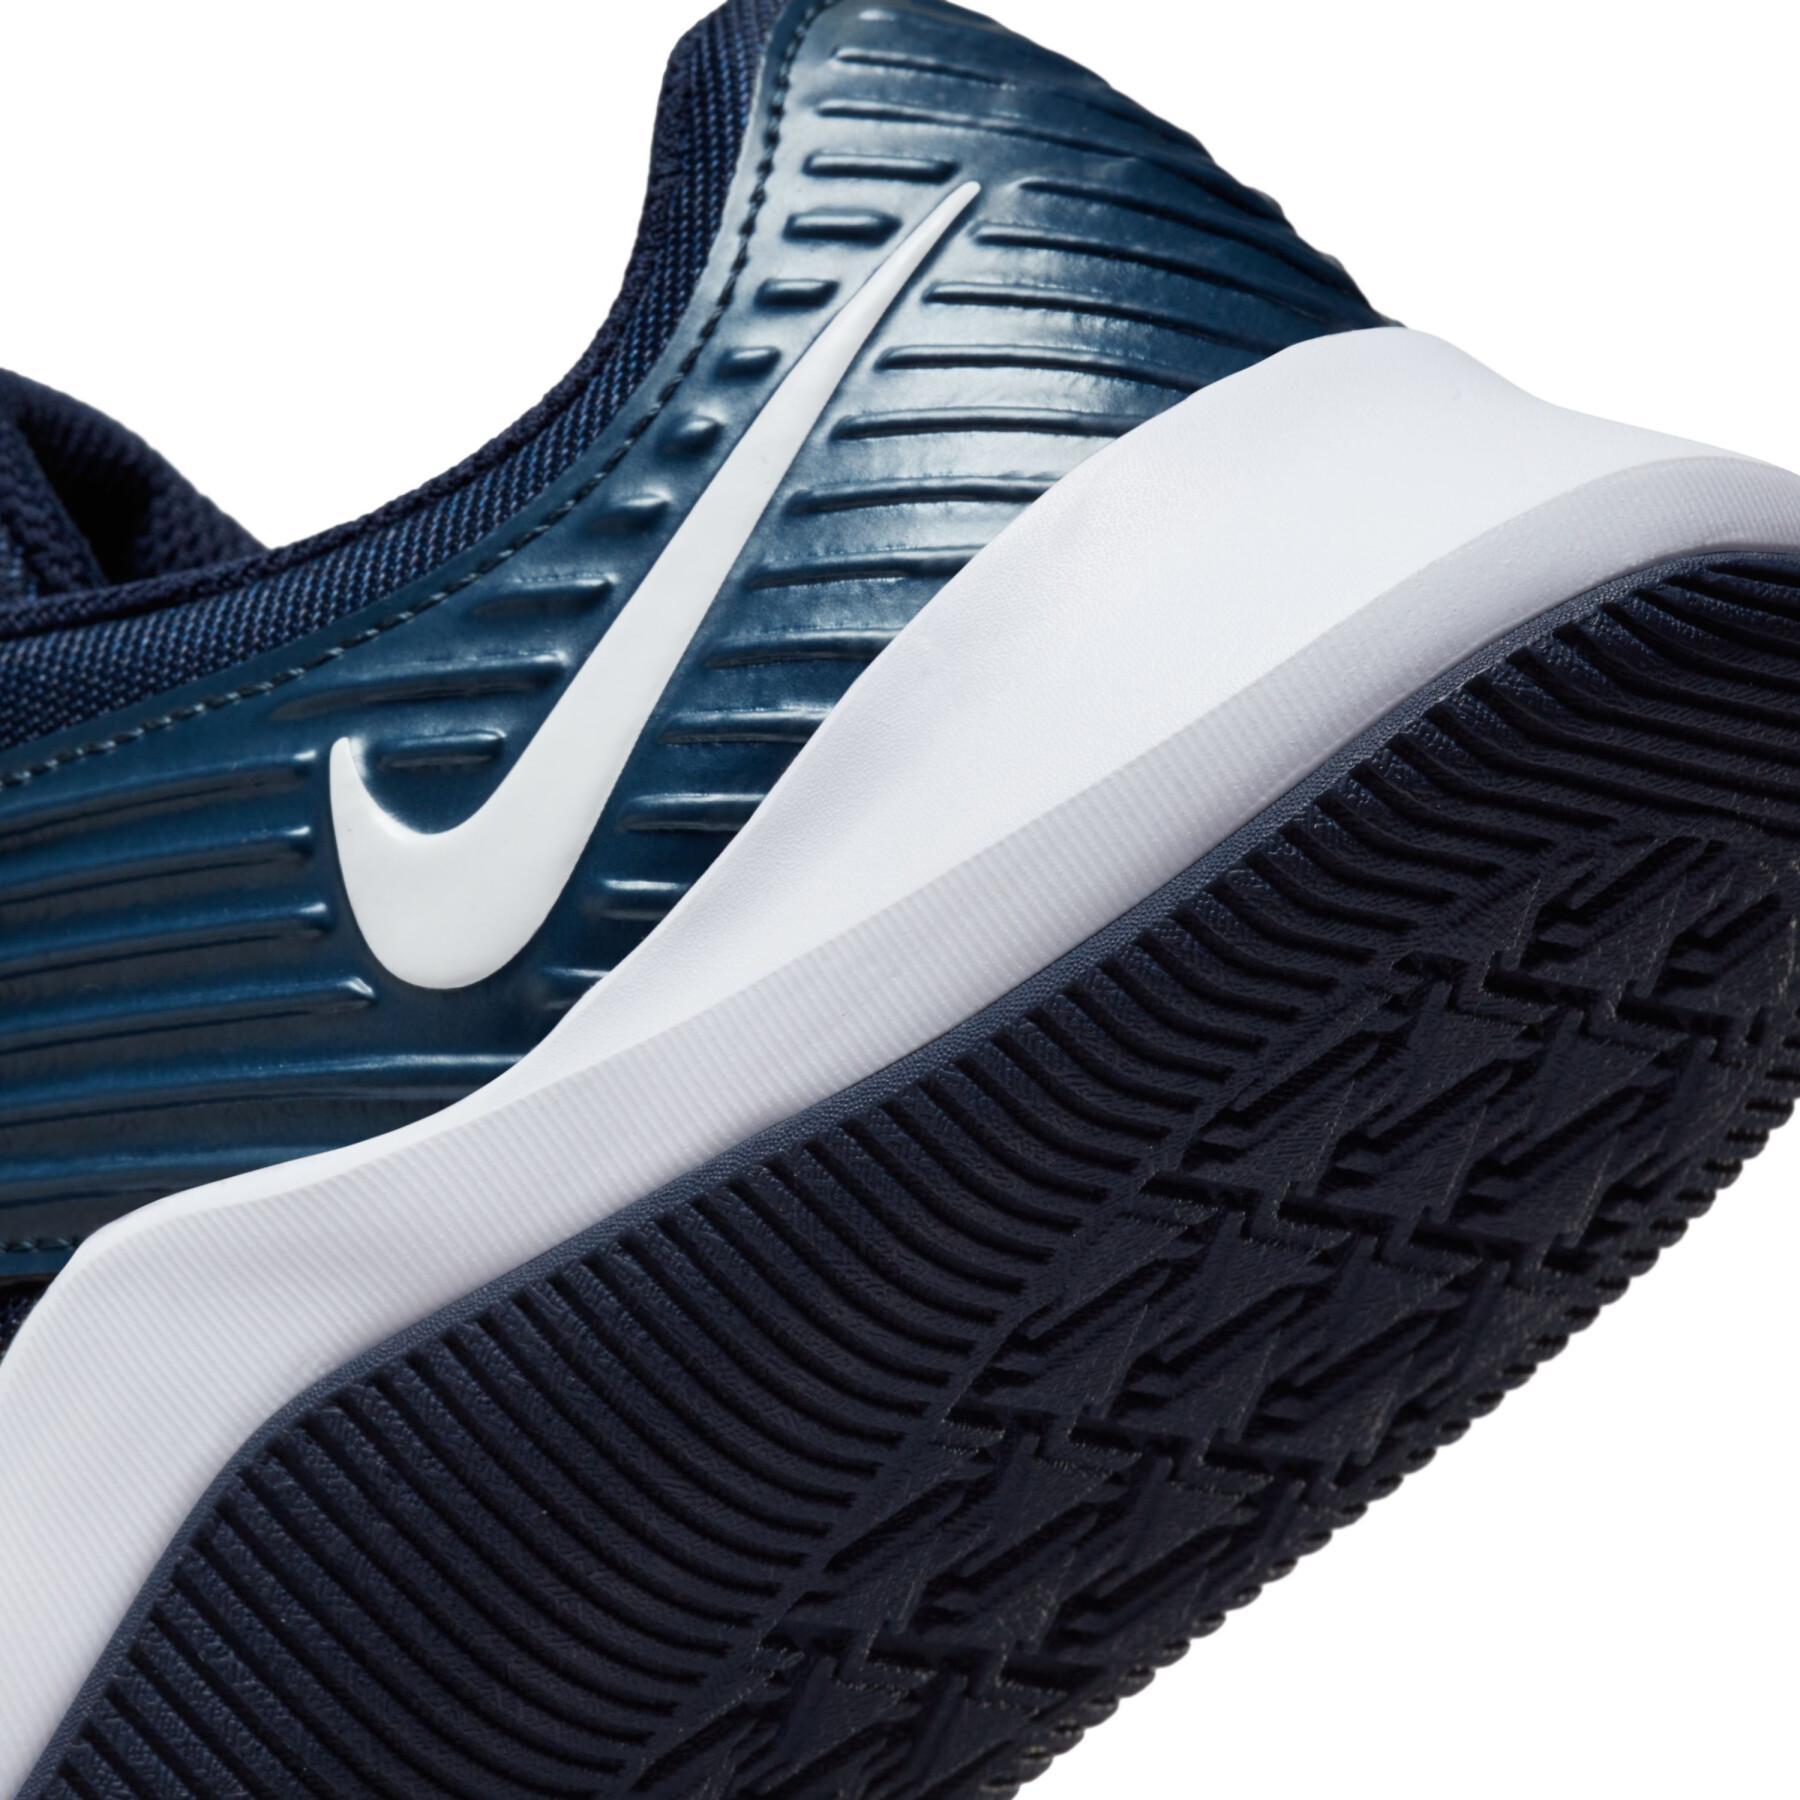 Skor för cross-training Nike Mc